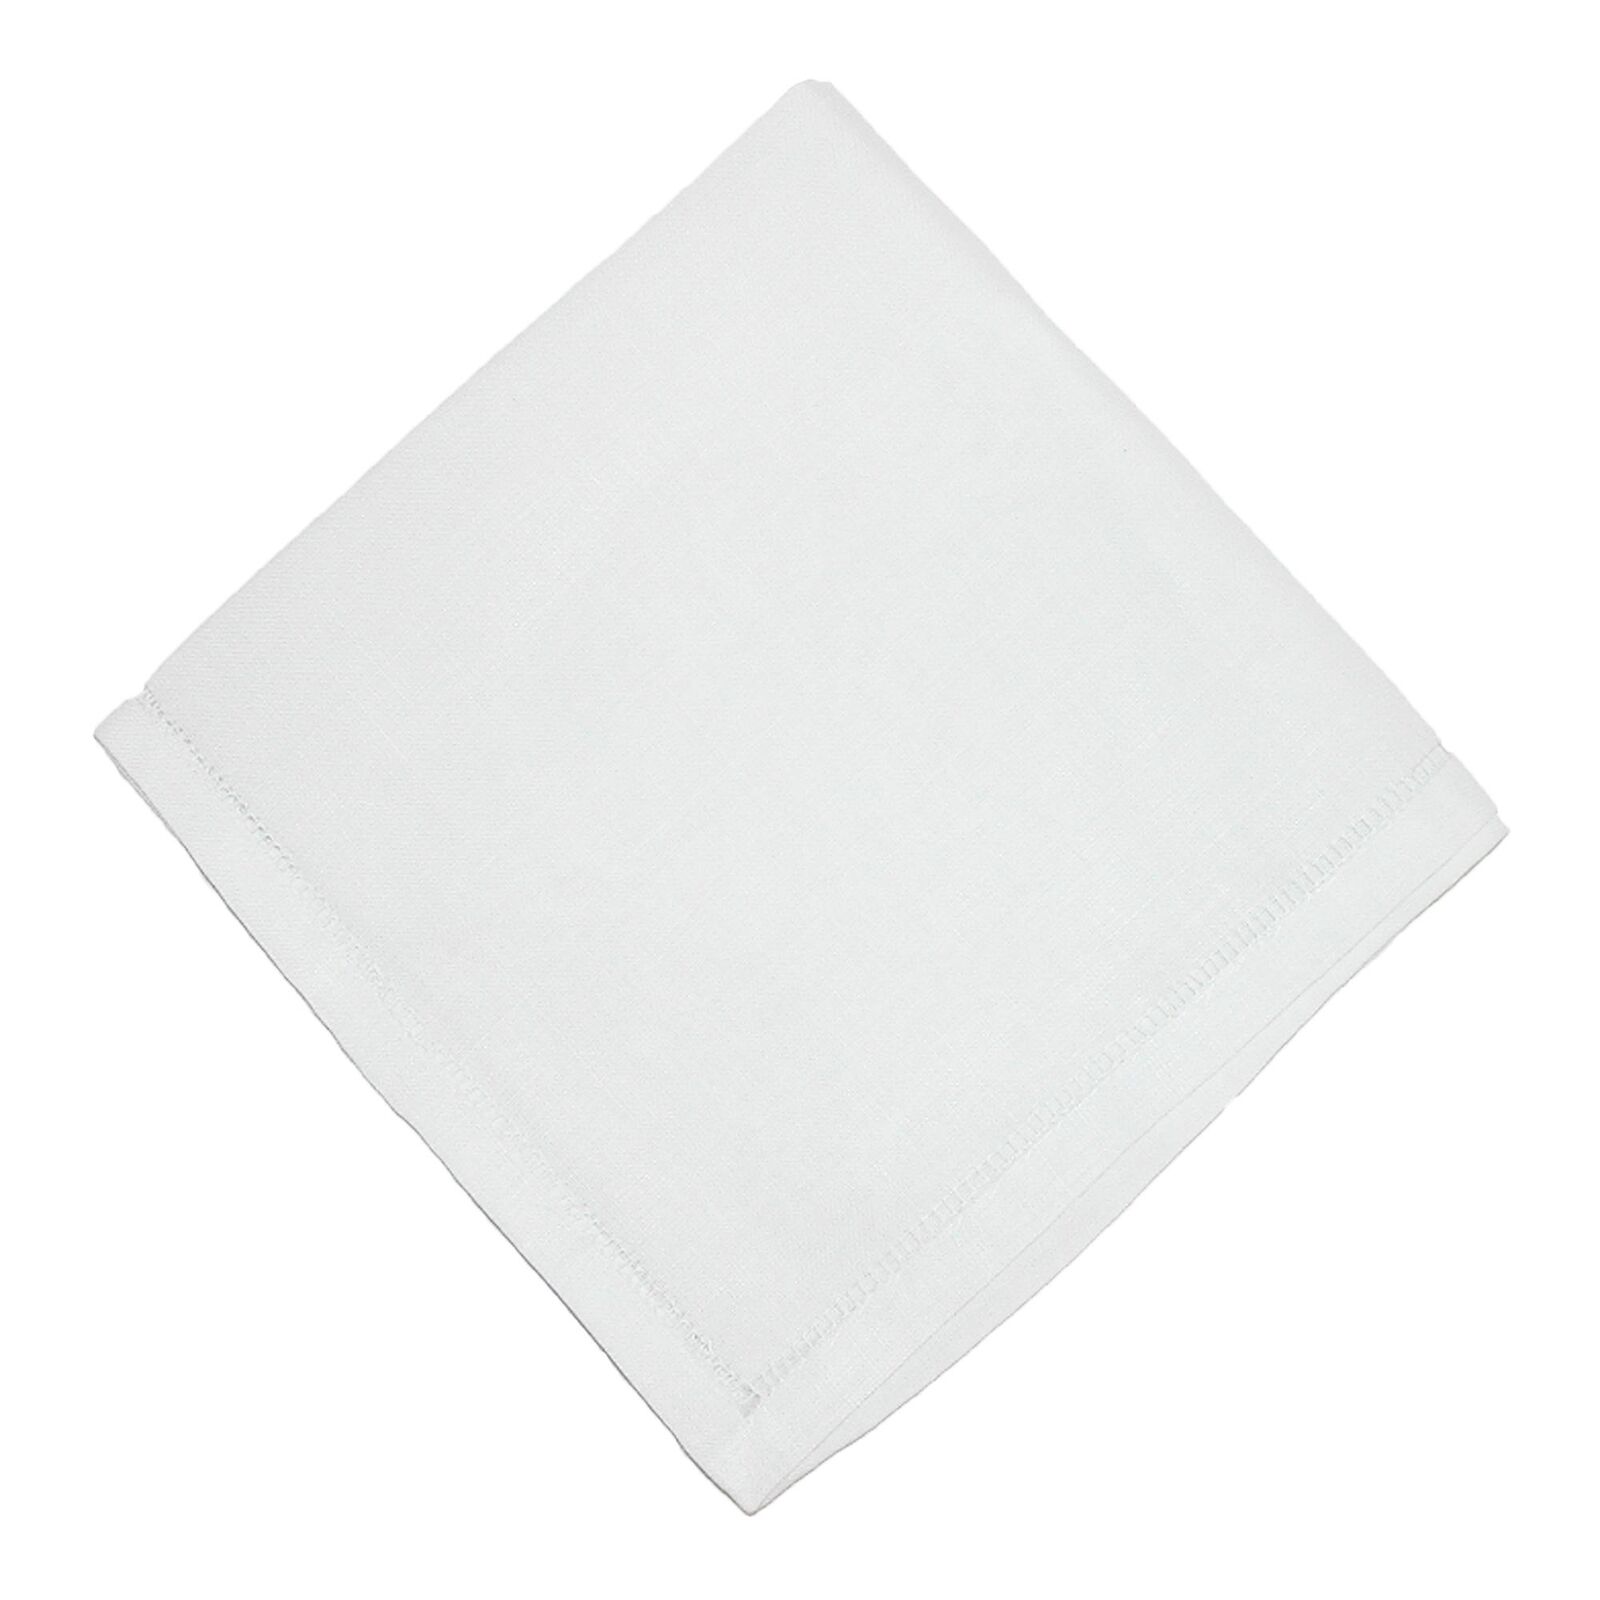 New CTM Linen Hemstitched Handkerchief